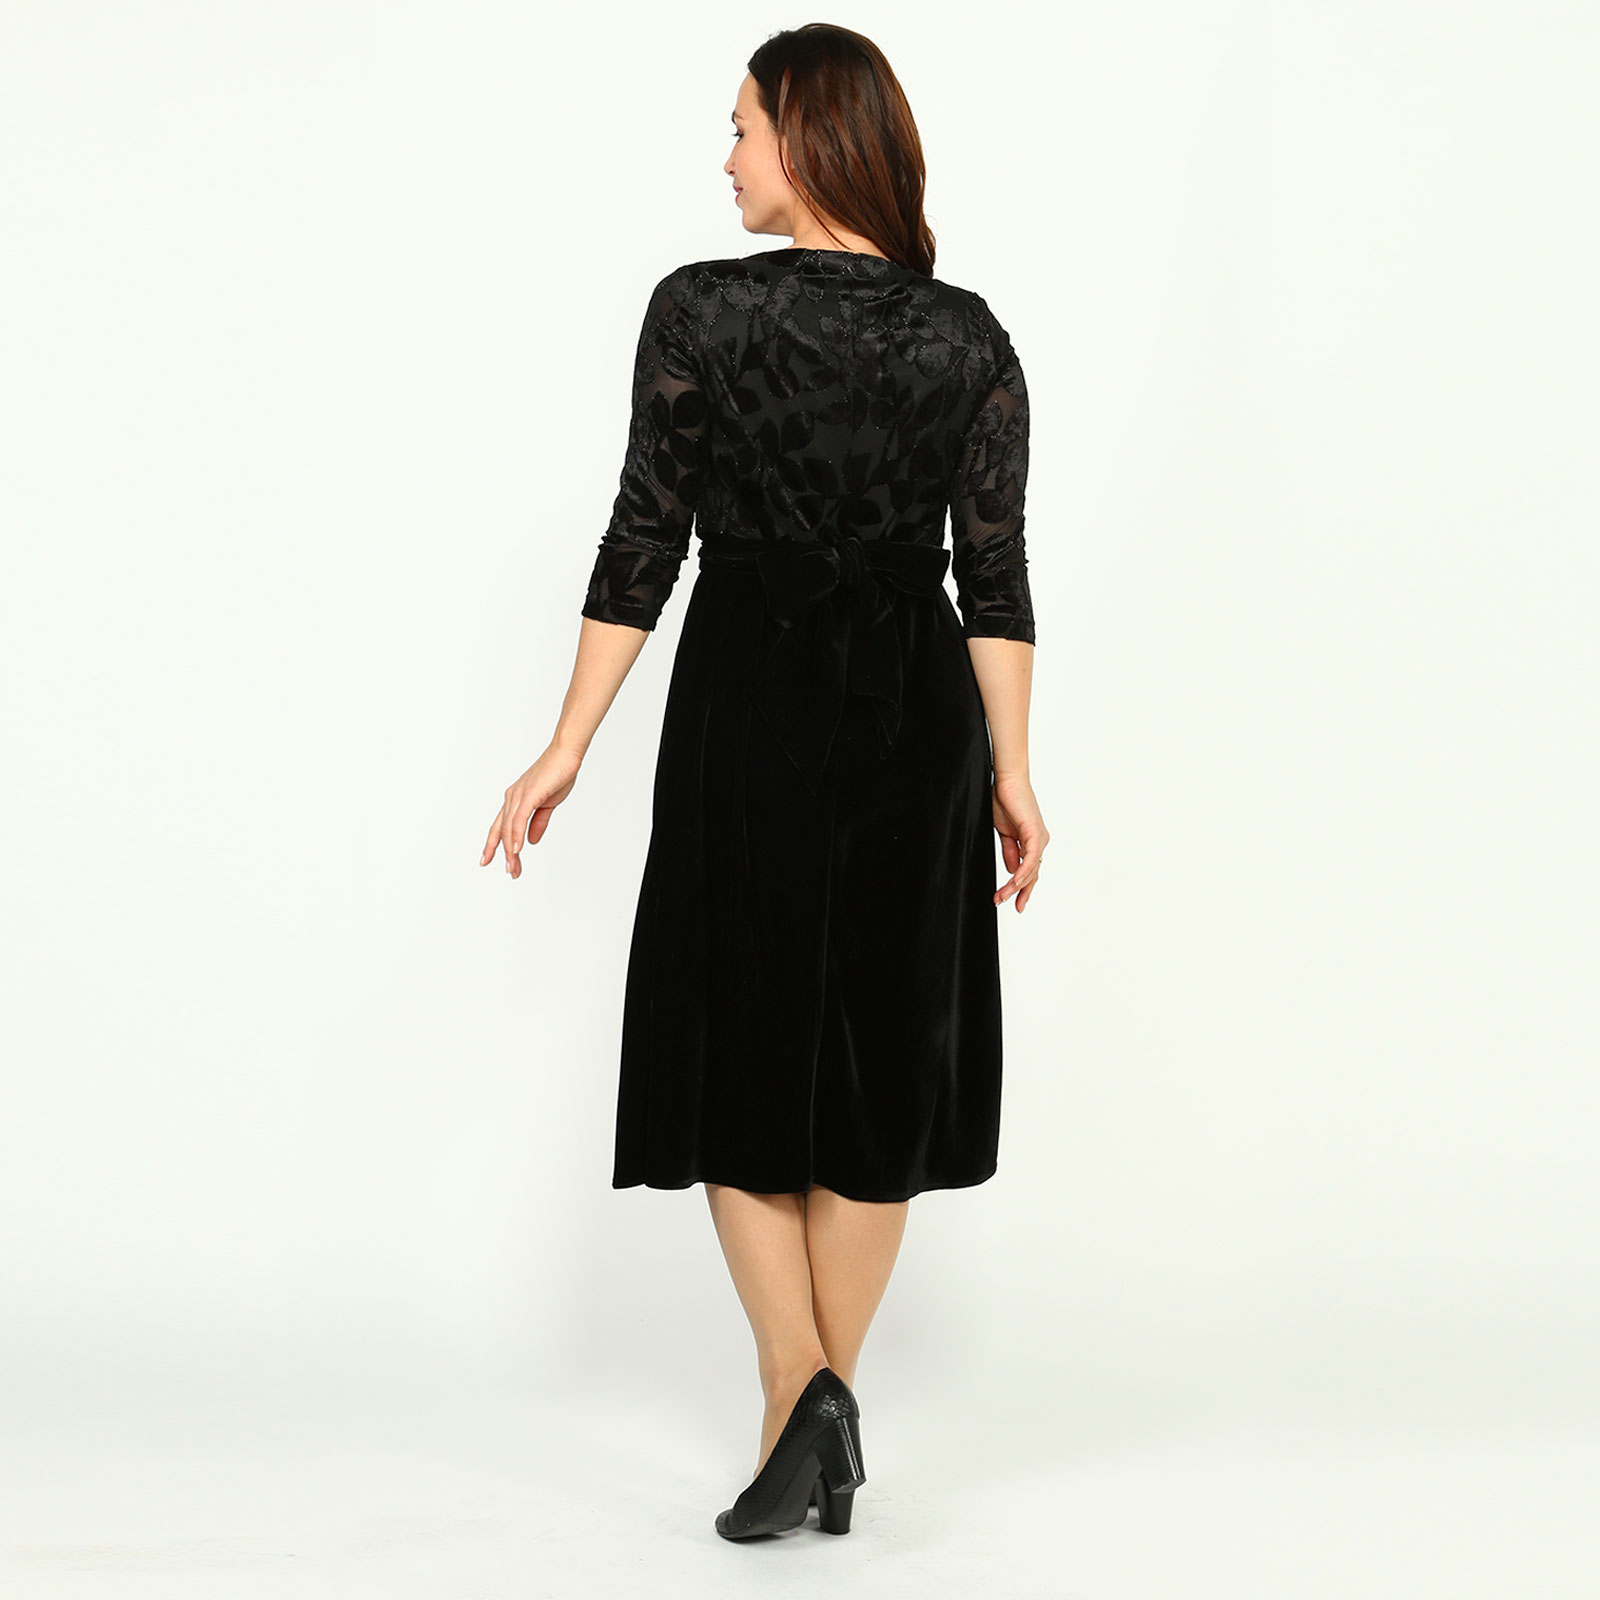 Платье с расклешенной юбкой и рисунком Elletto Life, размер 48, цвет черно-сиреневый - фото 4